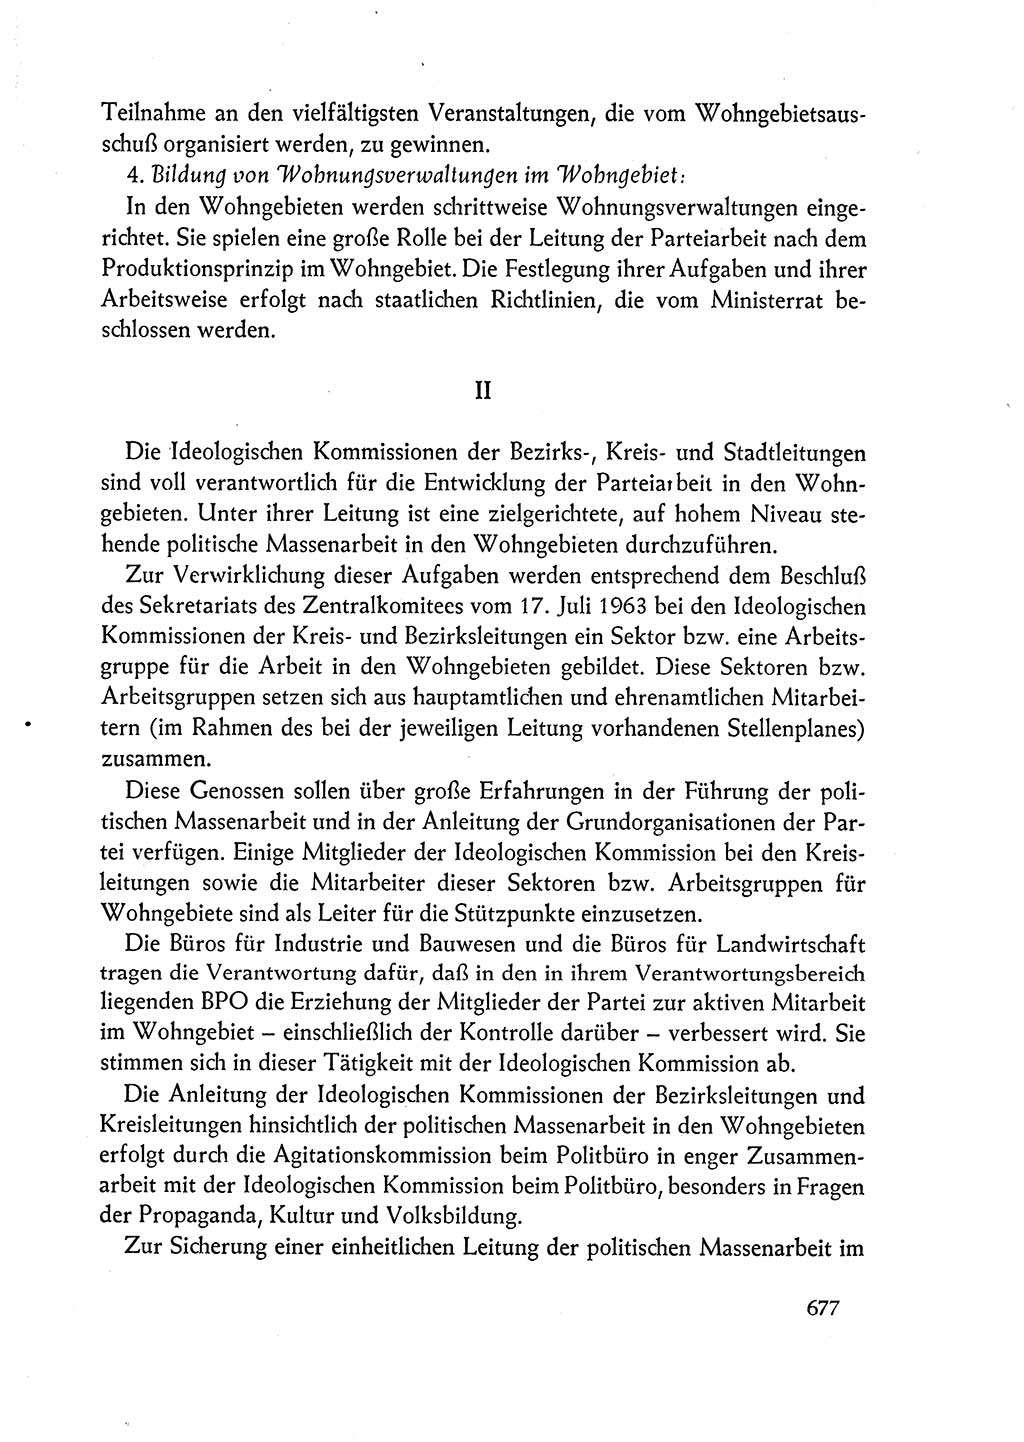 Dokumente der Sozialistischen Einheitspartei Deutschlands (SED) [Deutsche Demokratische Republik (DDR)] 1962-1963, Seite 677 (Dok. SED DDR 1962-1963, S. 677)